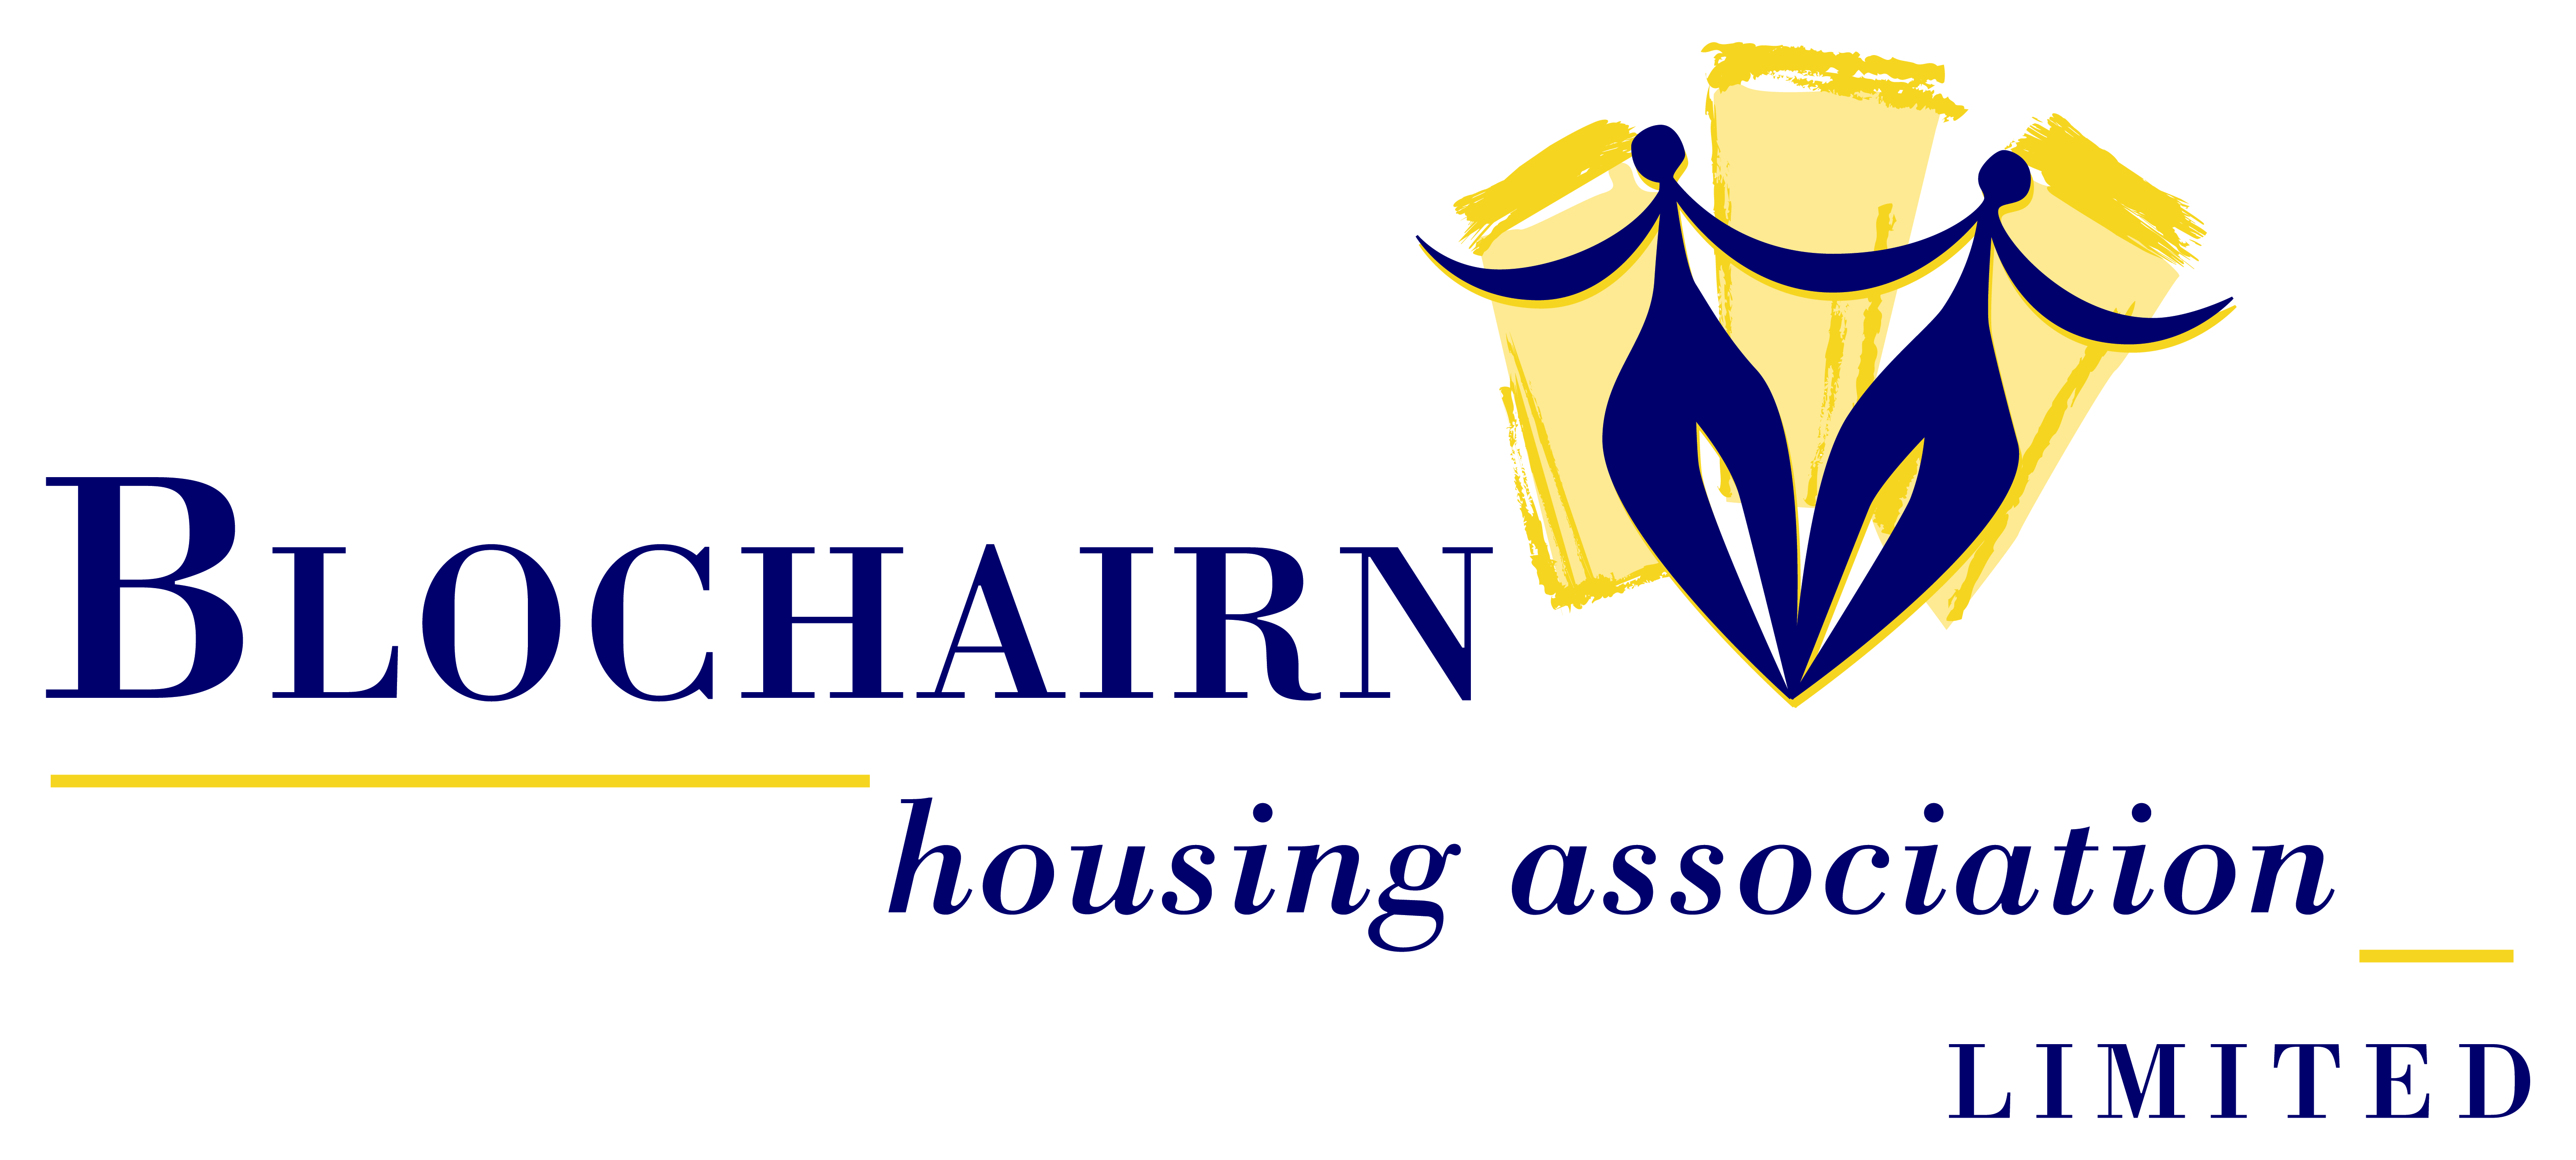 logo for Blochairn Housing Association Ltd